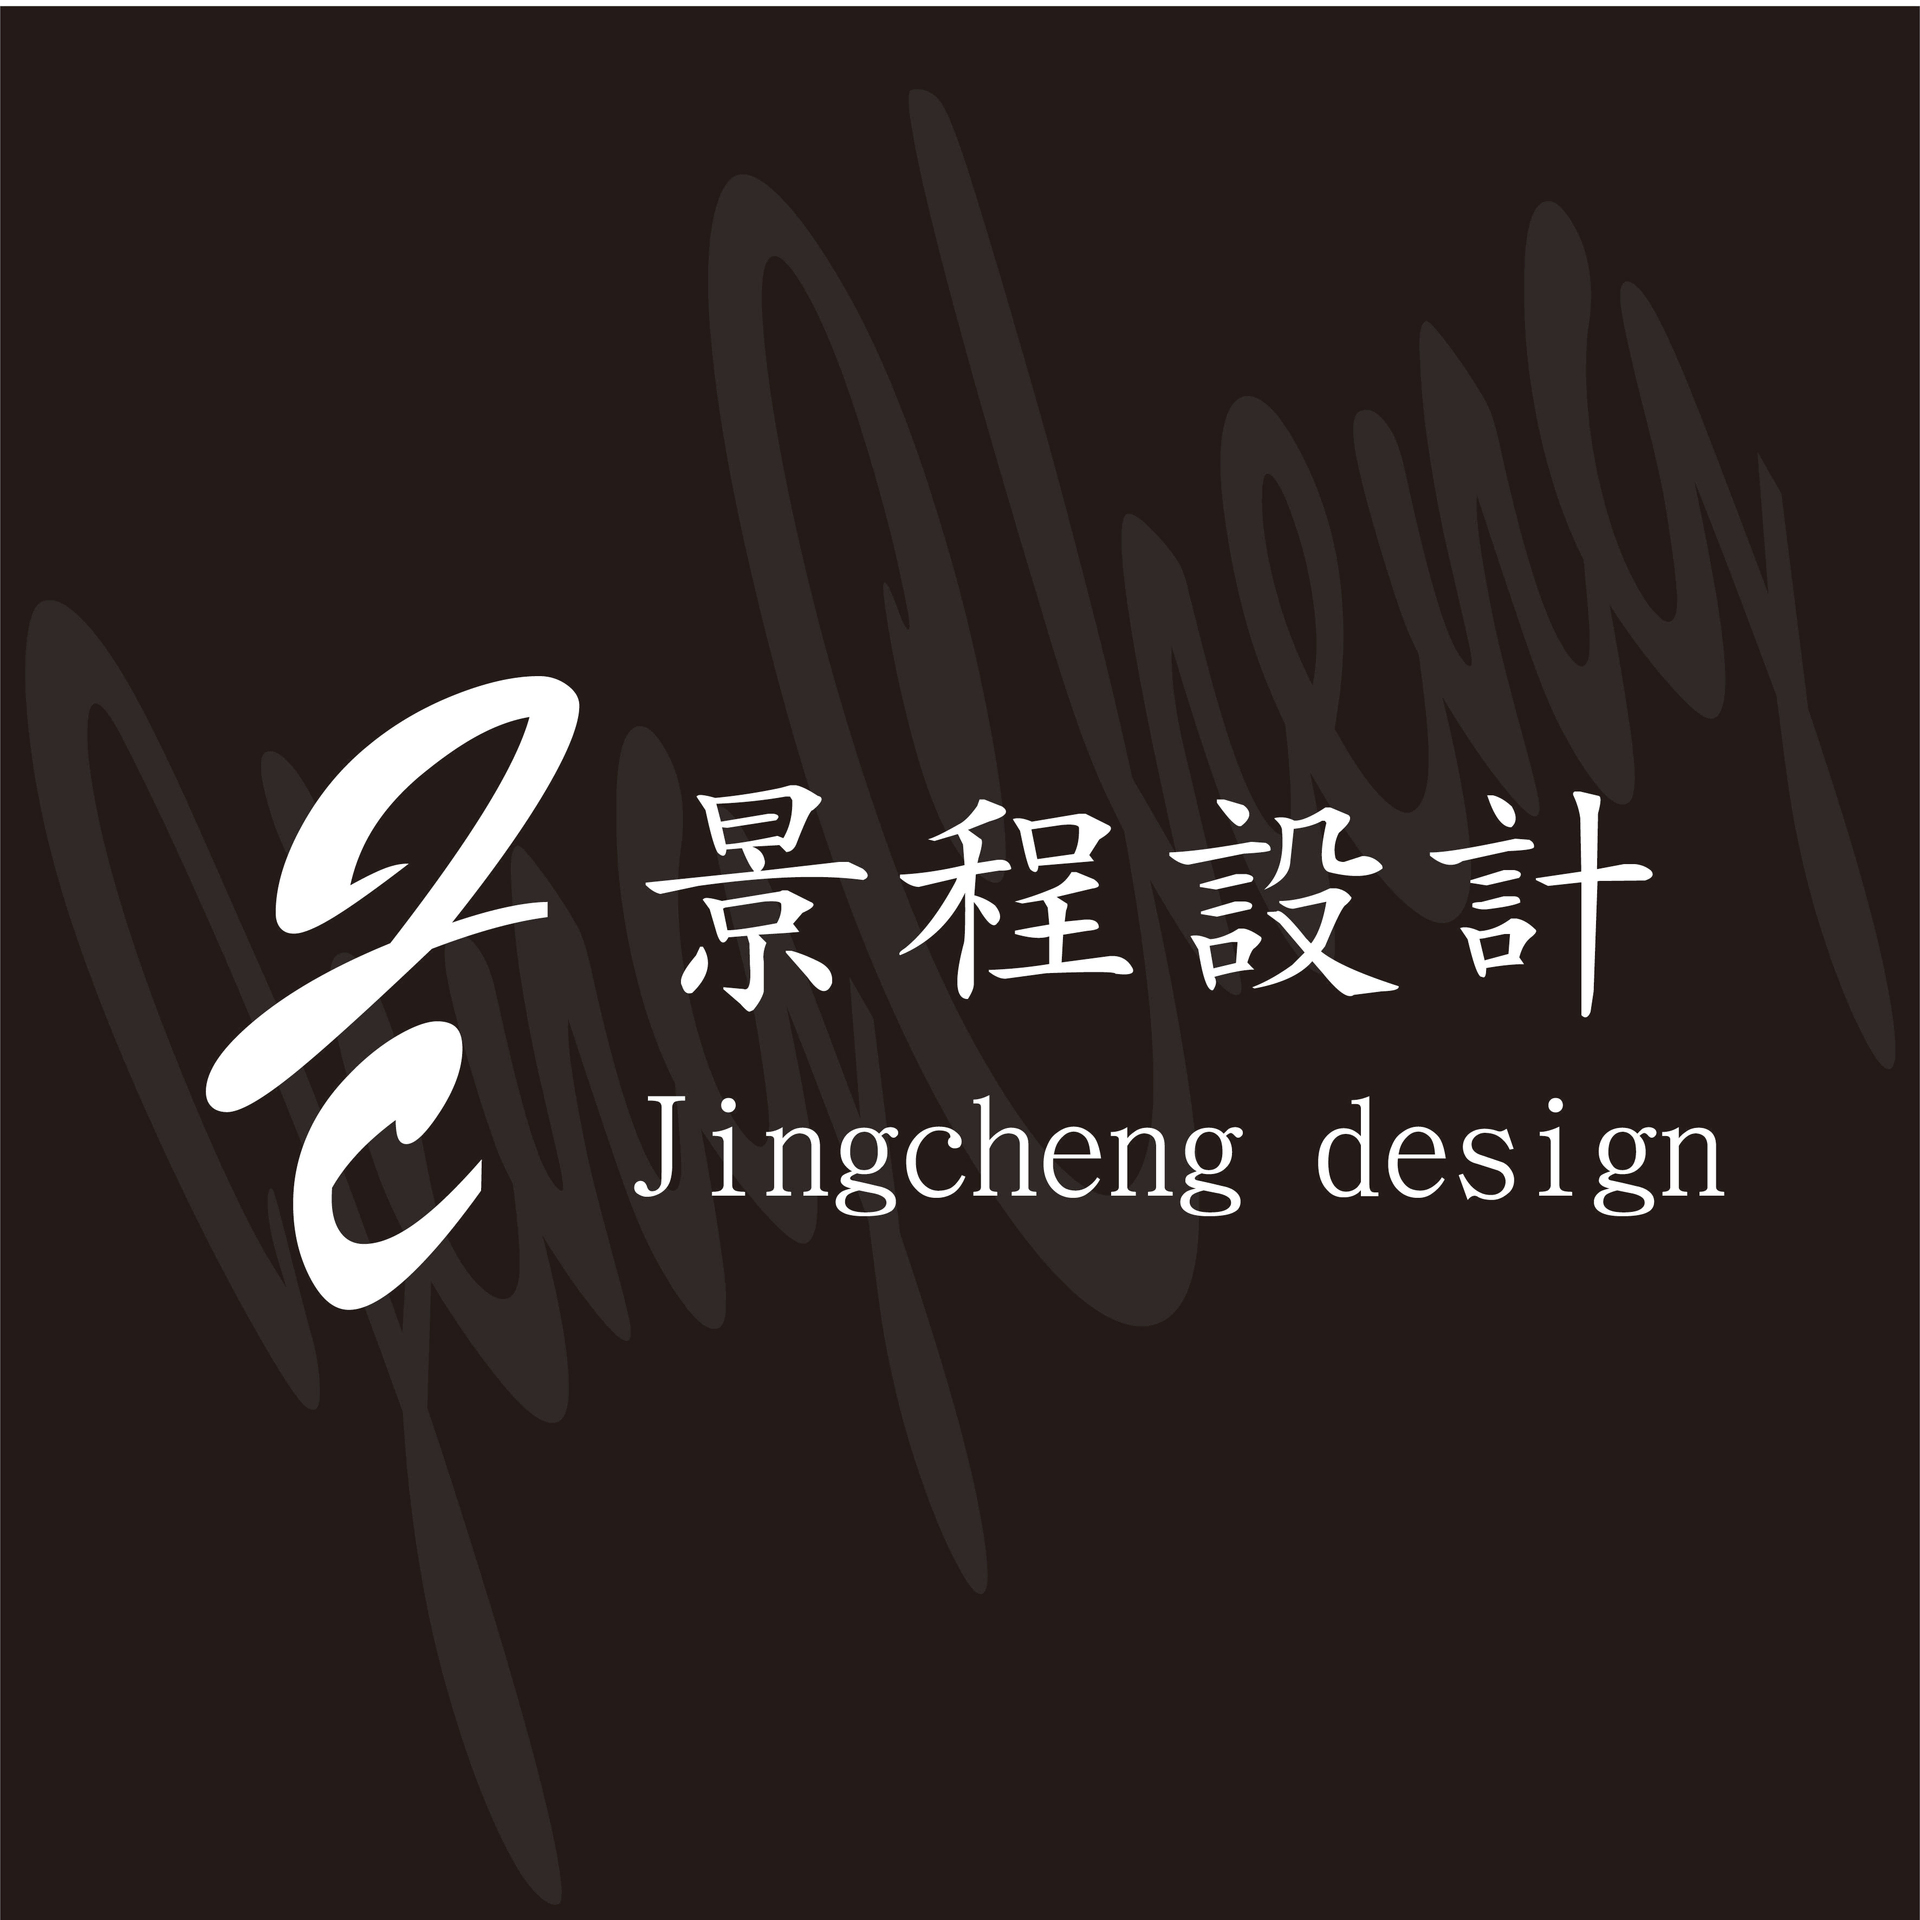 景程設計有限公司Logo